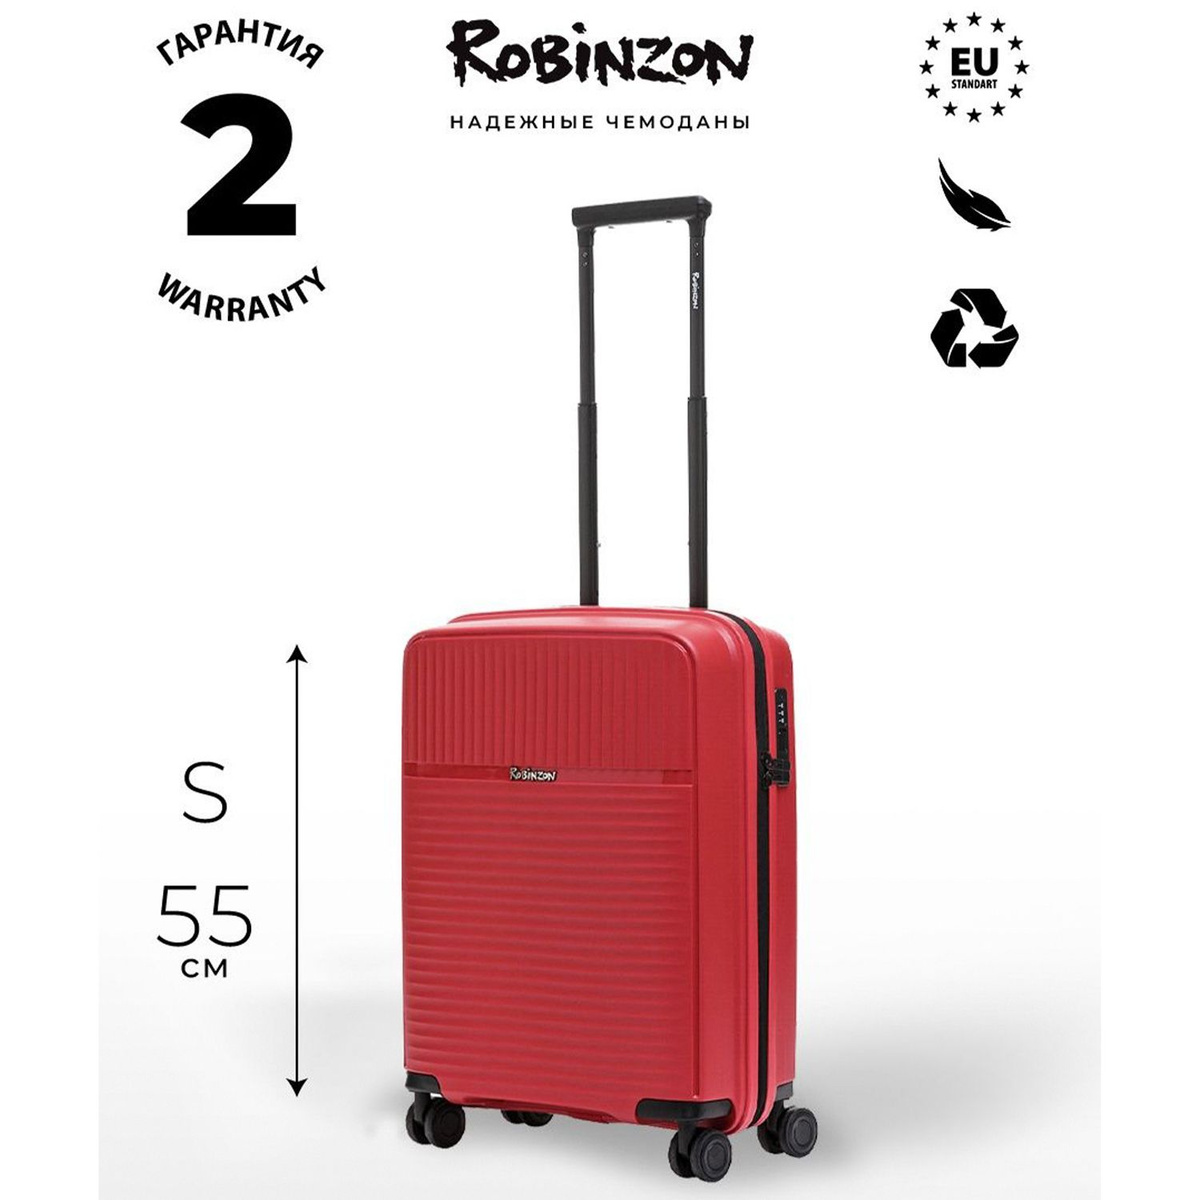 Размер чемодана: 40x55x20 см Вес чемодана: всего 2,4 кг Объём чемодана: 37 л